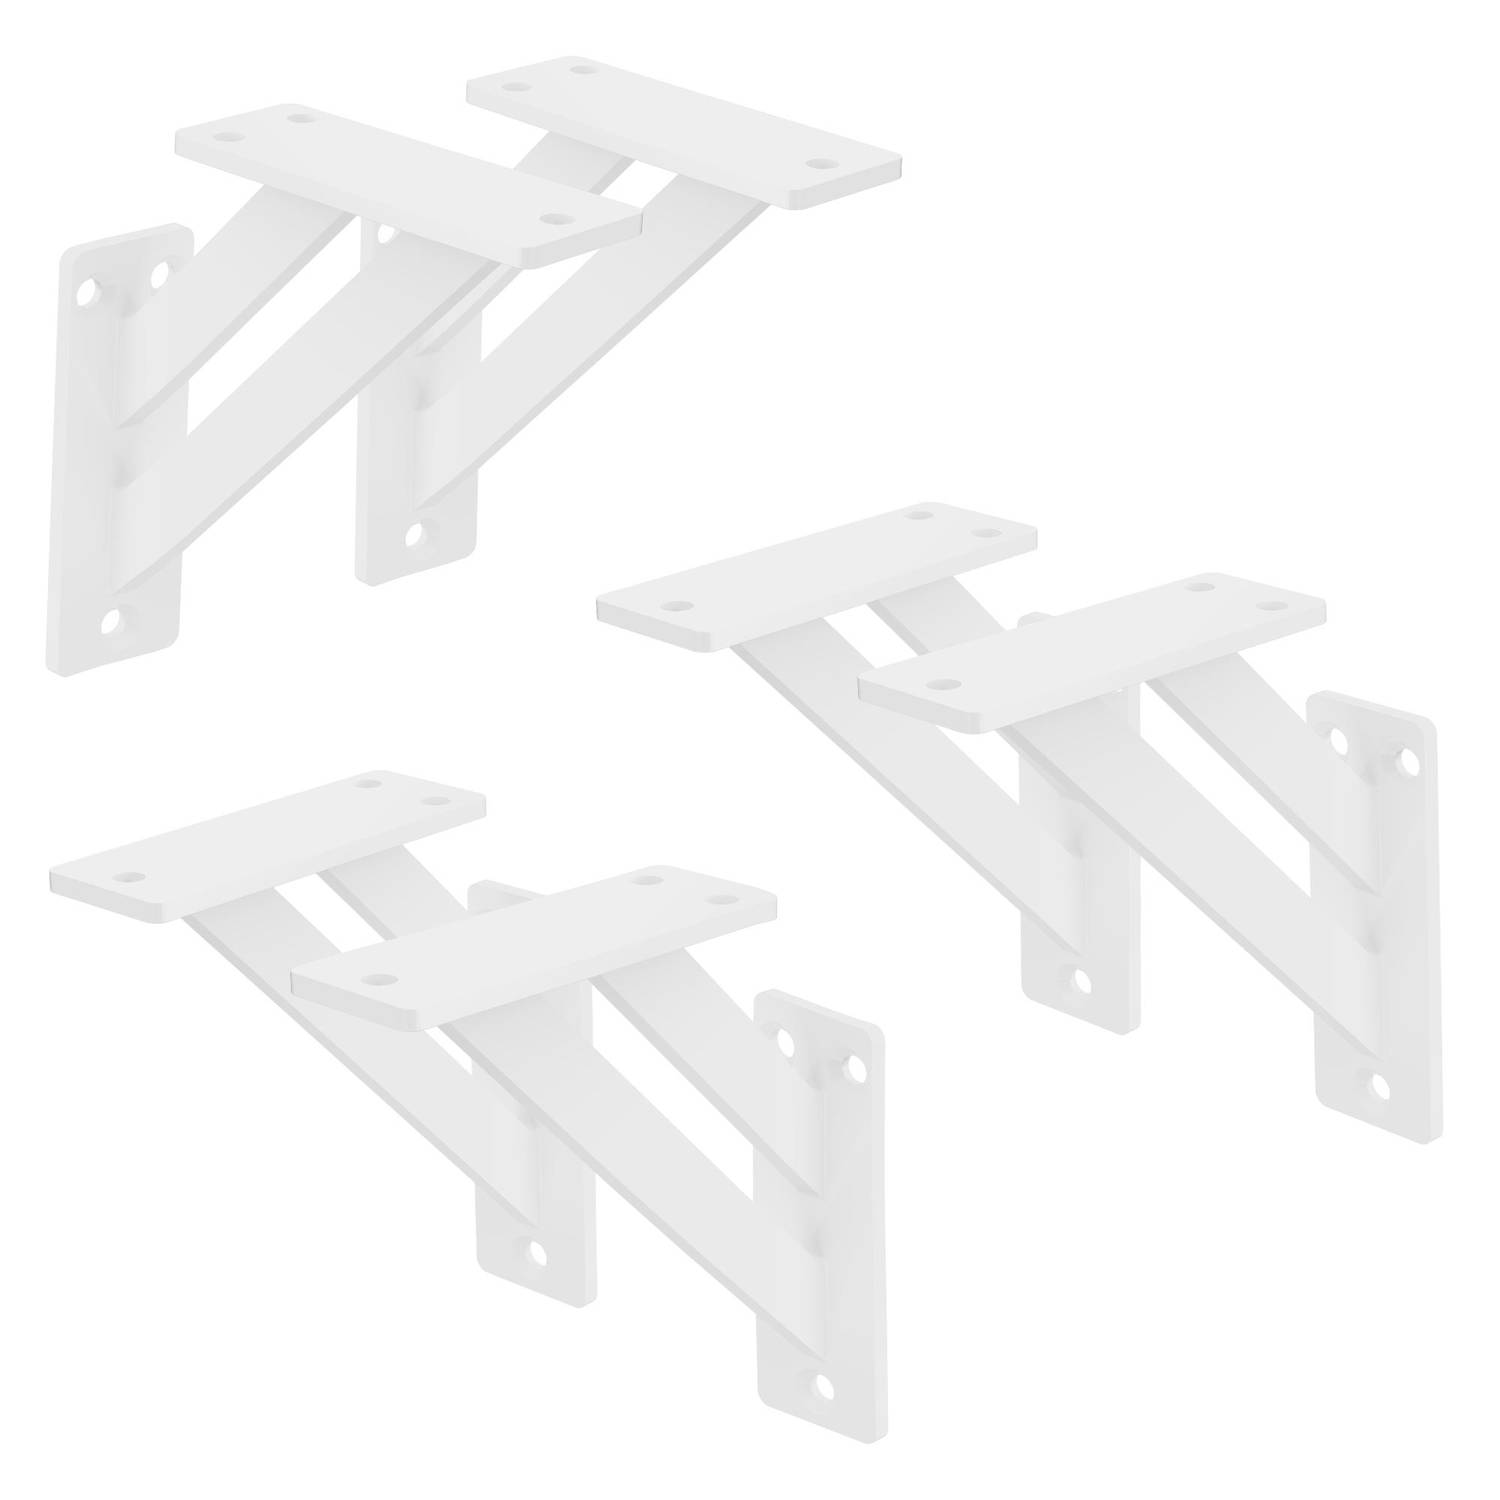 ML-Design 6 stuks Plankdrager 120x120 mm, Wit, Aluminium, Zwevende plankdrager, Plankdrager, Wanddrager voor plankdrager, Plankdrager voor wandmontage, Wandplank Wanddrager Plankdr